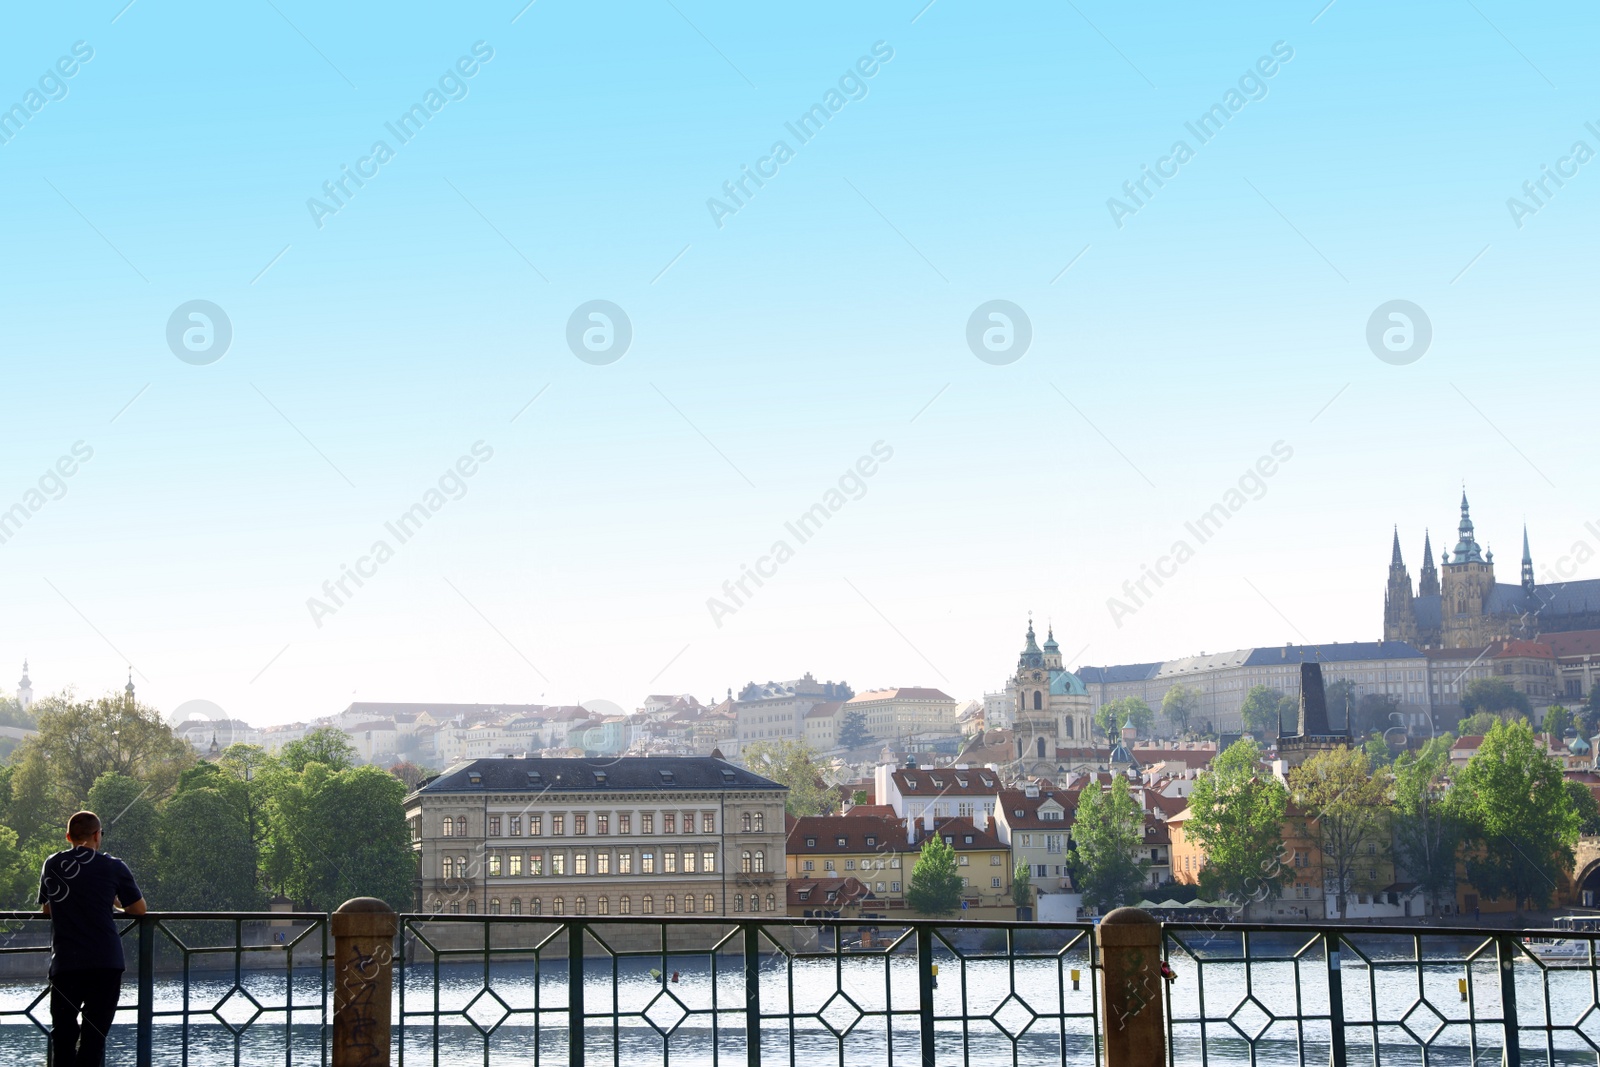 Photo of PRAGUE, CZECH REPUBLIC - APRIL 25, 2019: Cityscape with Castle complex, Saint Vitus Cathedral, Liechtenstein palace and Vltava river